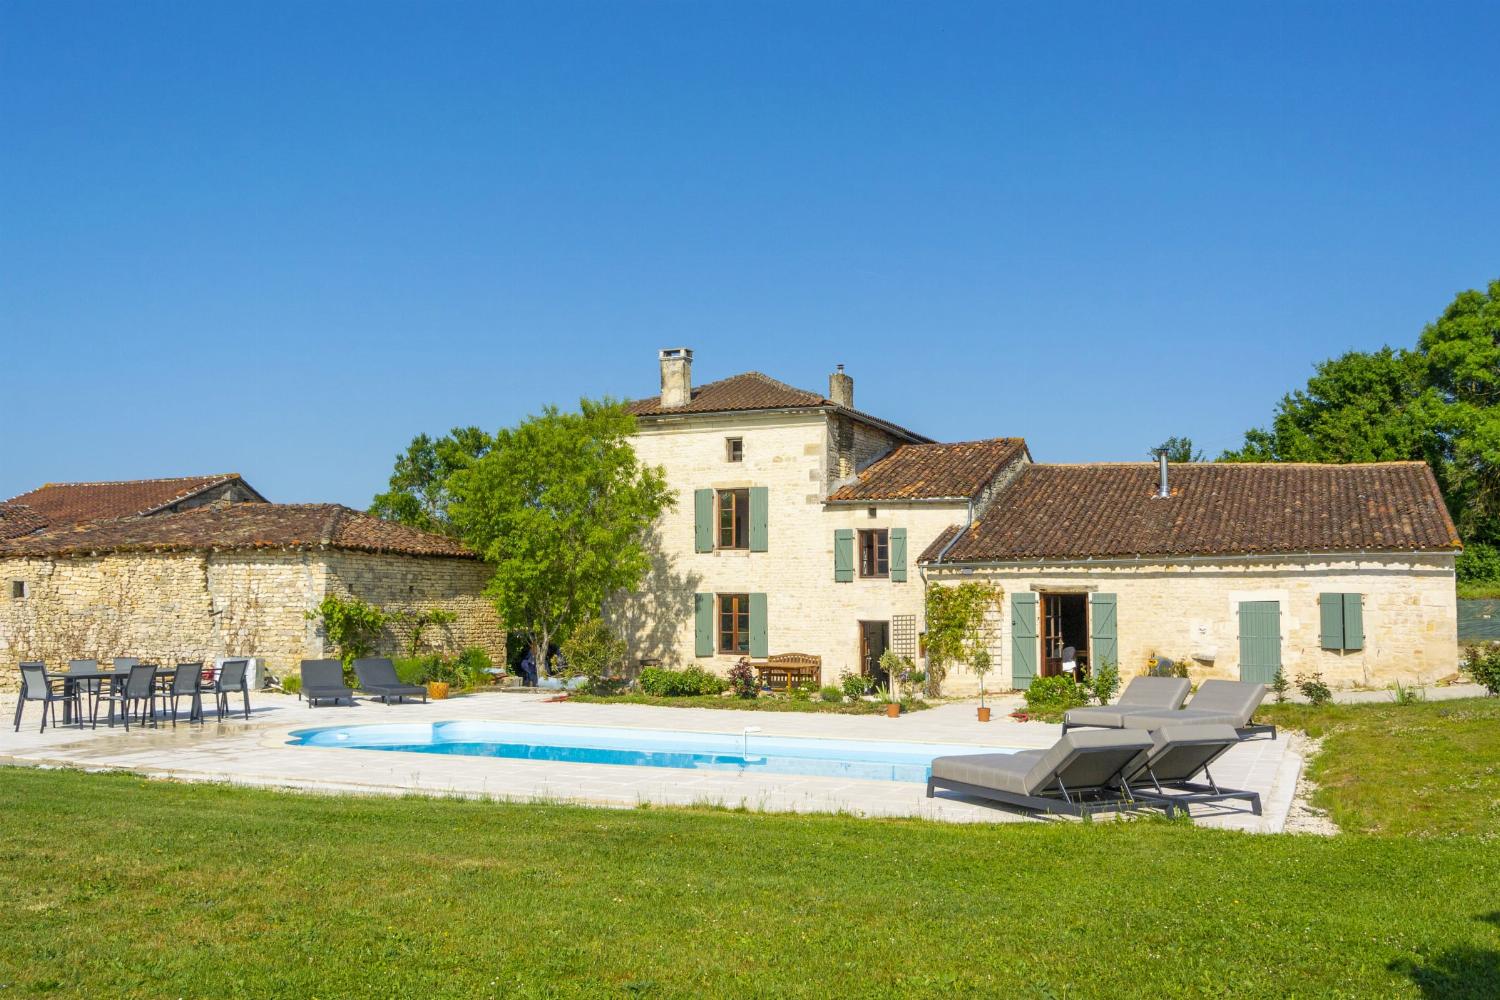 Location de vacances en Charente avec piscine privée chauffée